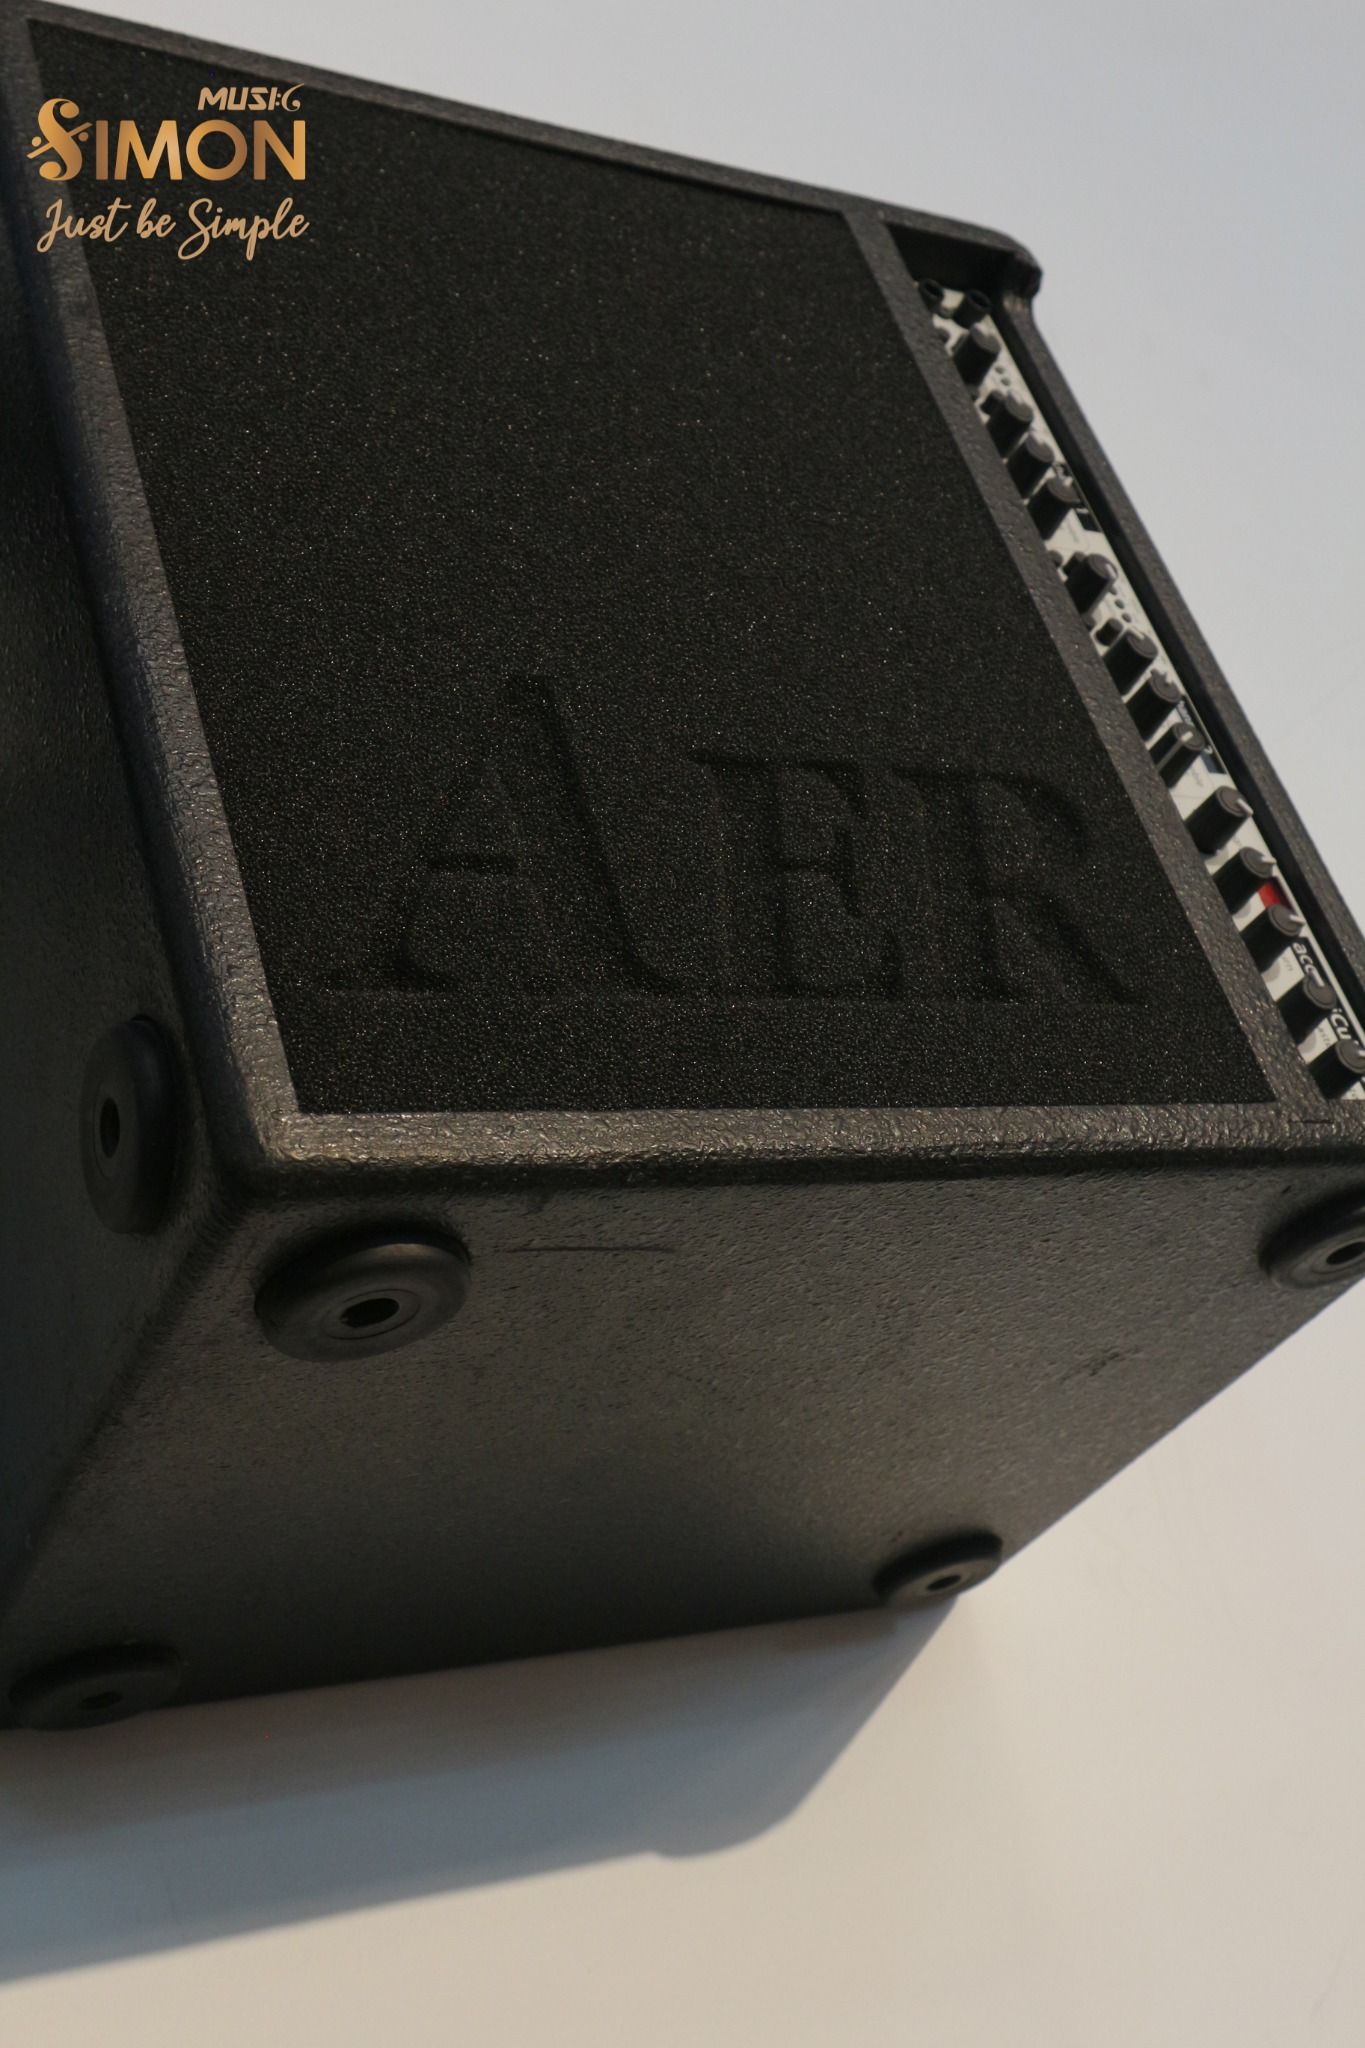  AER Acoustic cube 3 Amplifier 